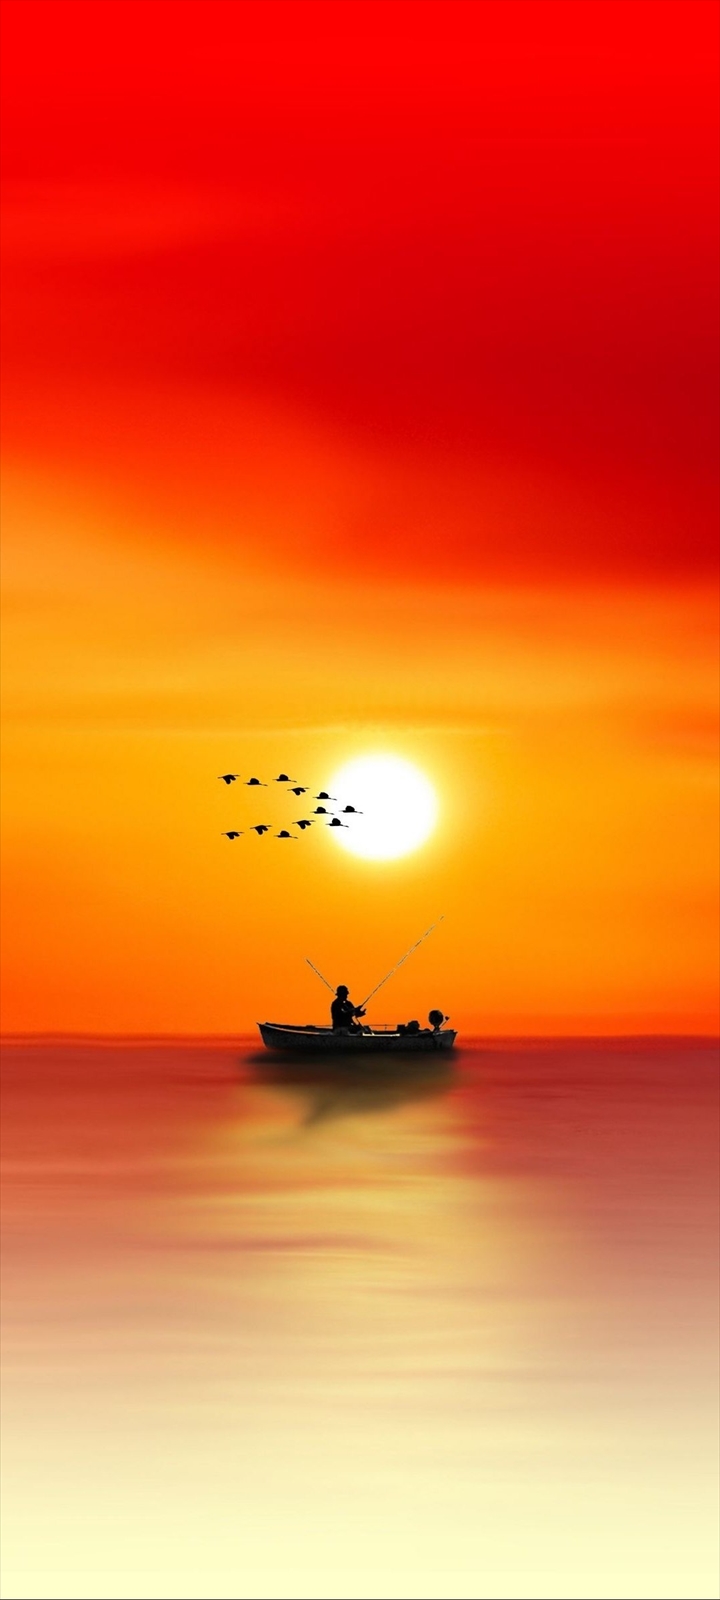 ボートで釣りをする人と渡り鳥と夕日 Moto G8 Power Lite 壁紙 待ち受け Sumaran